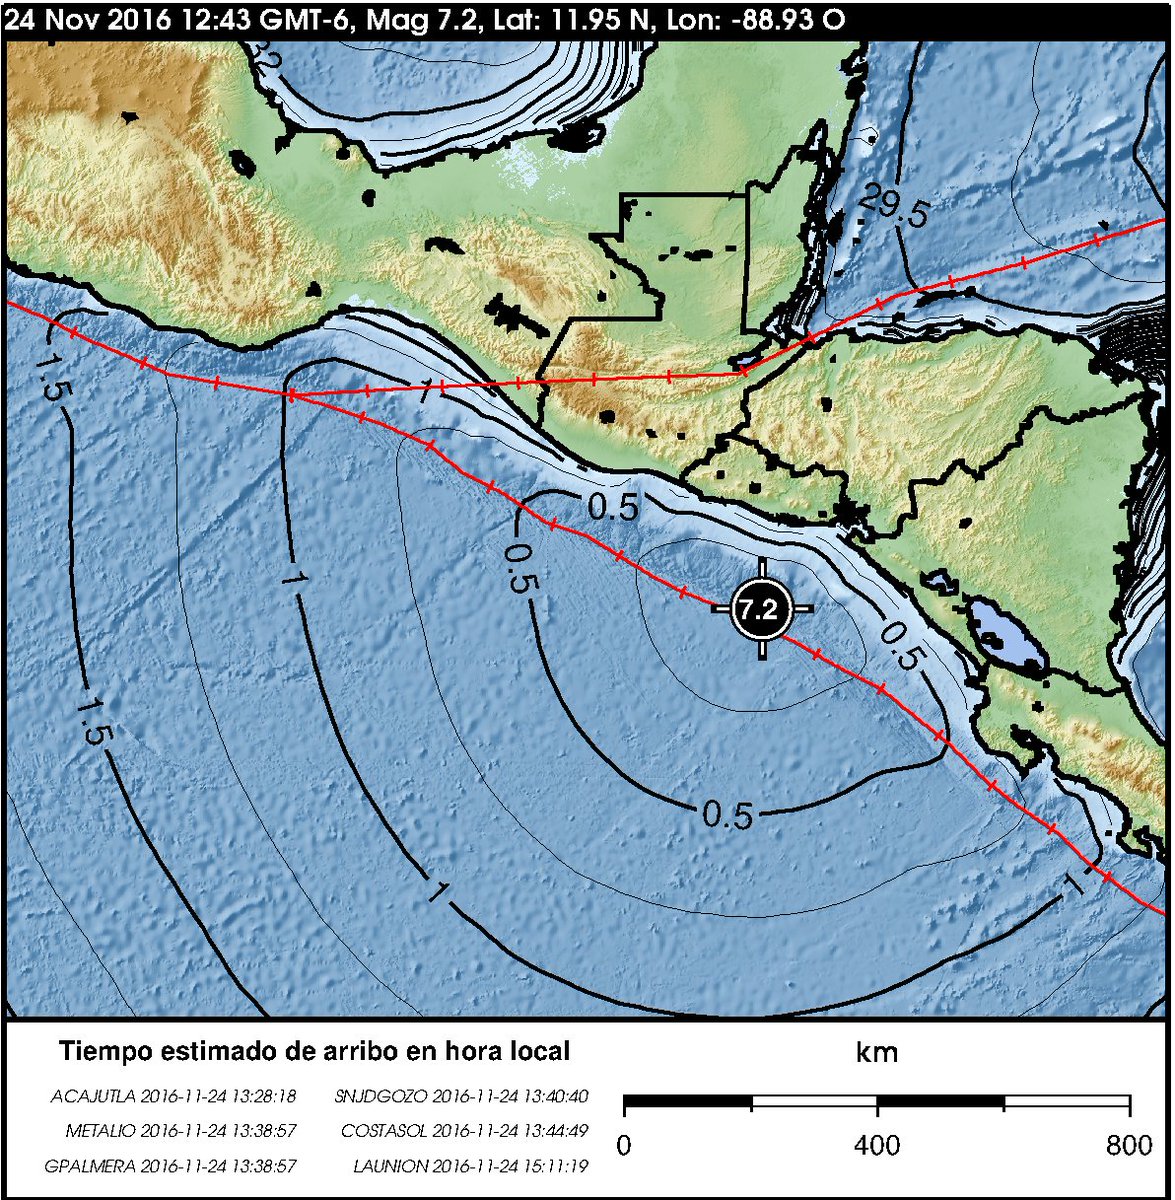 Earthquakes in the World - SEGUIMIENTO MUNDIAL DE SISMOS - Página 22 CyDNKi9UkAAZEy_